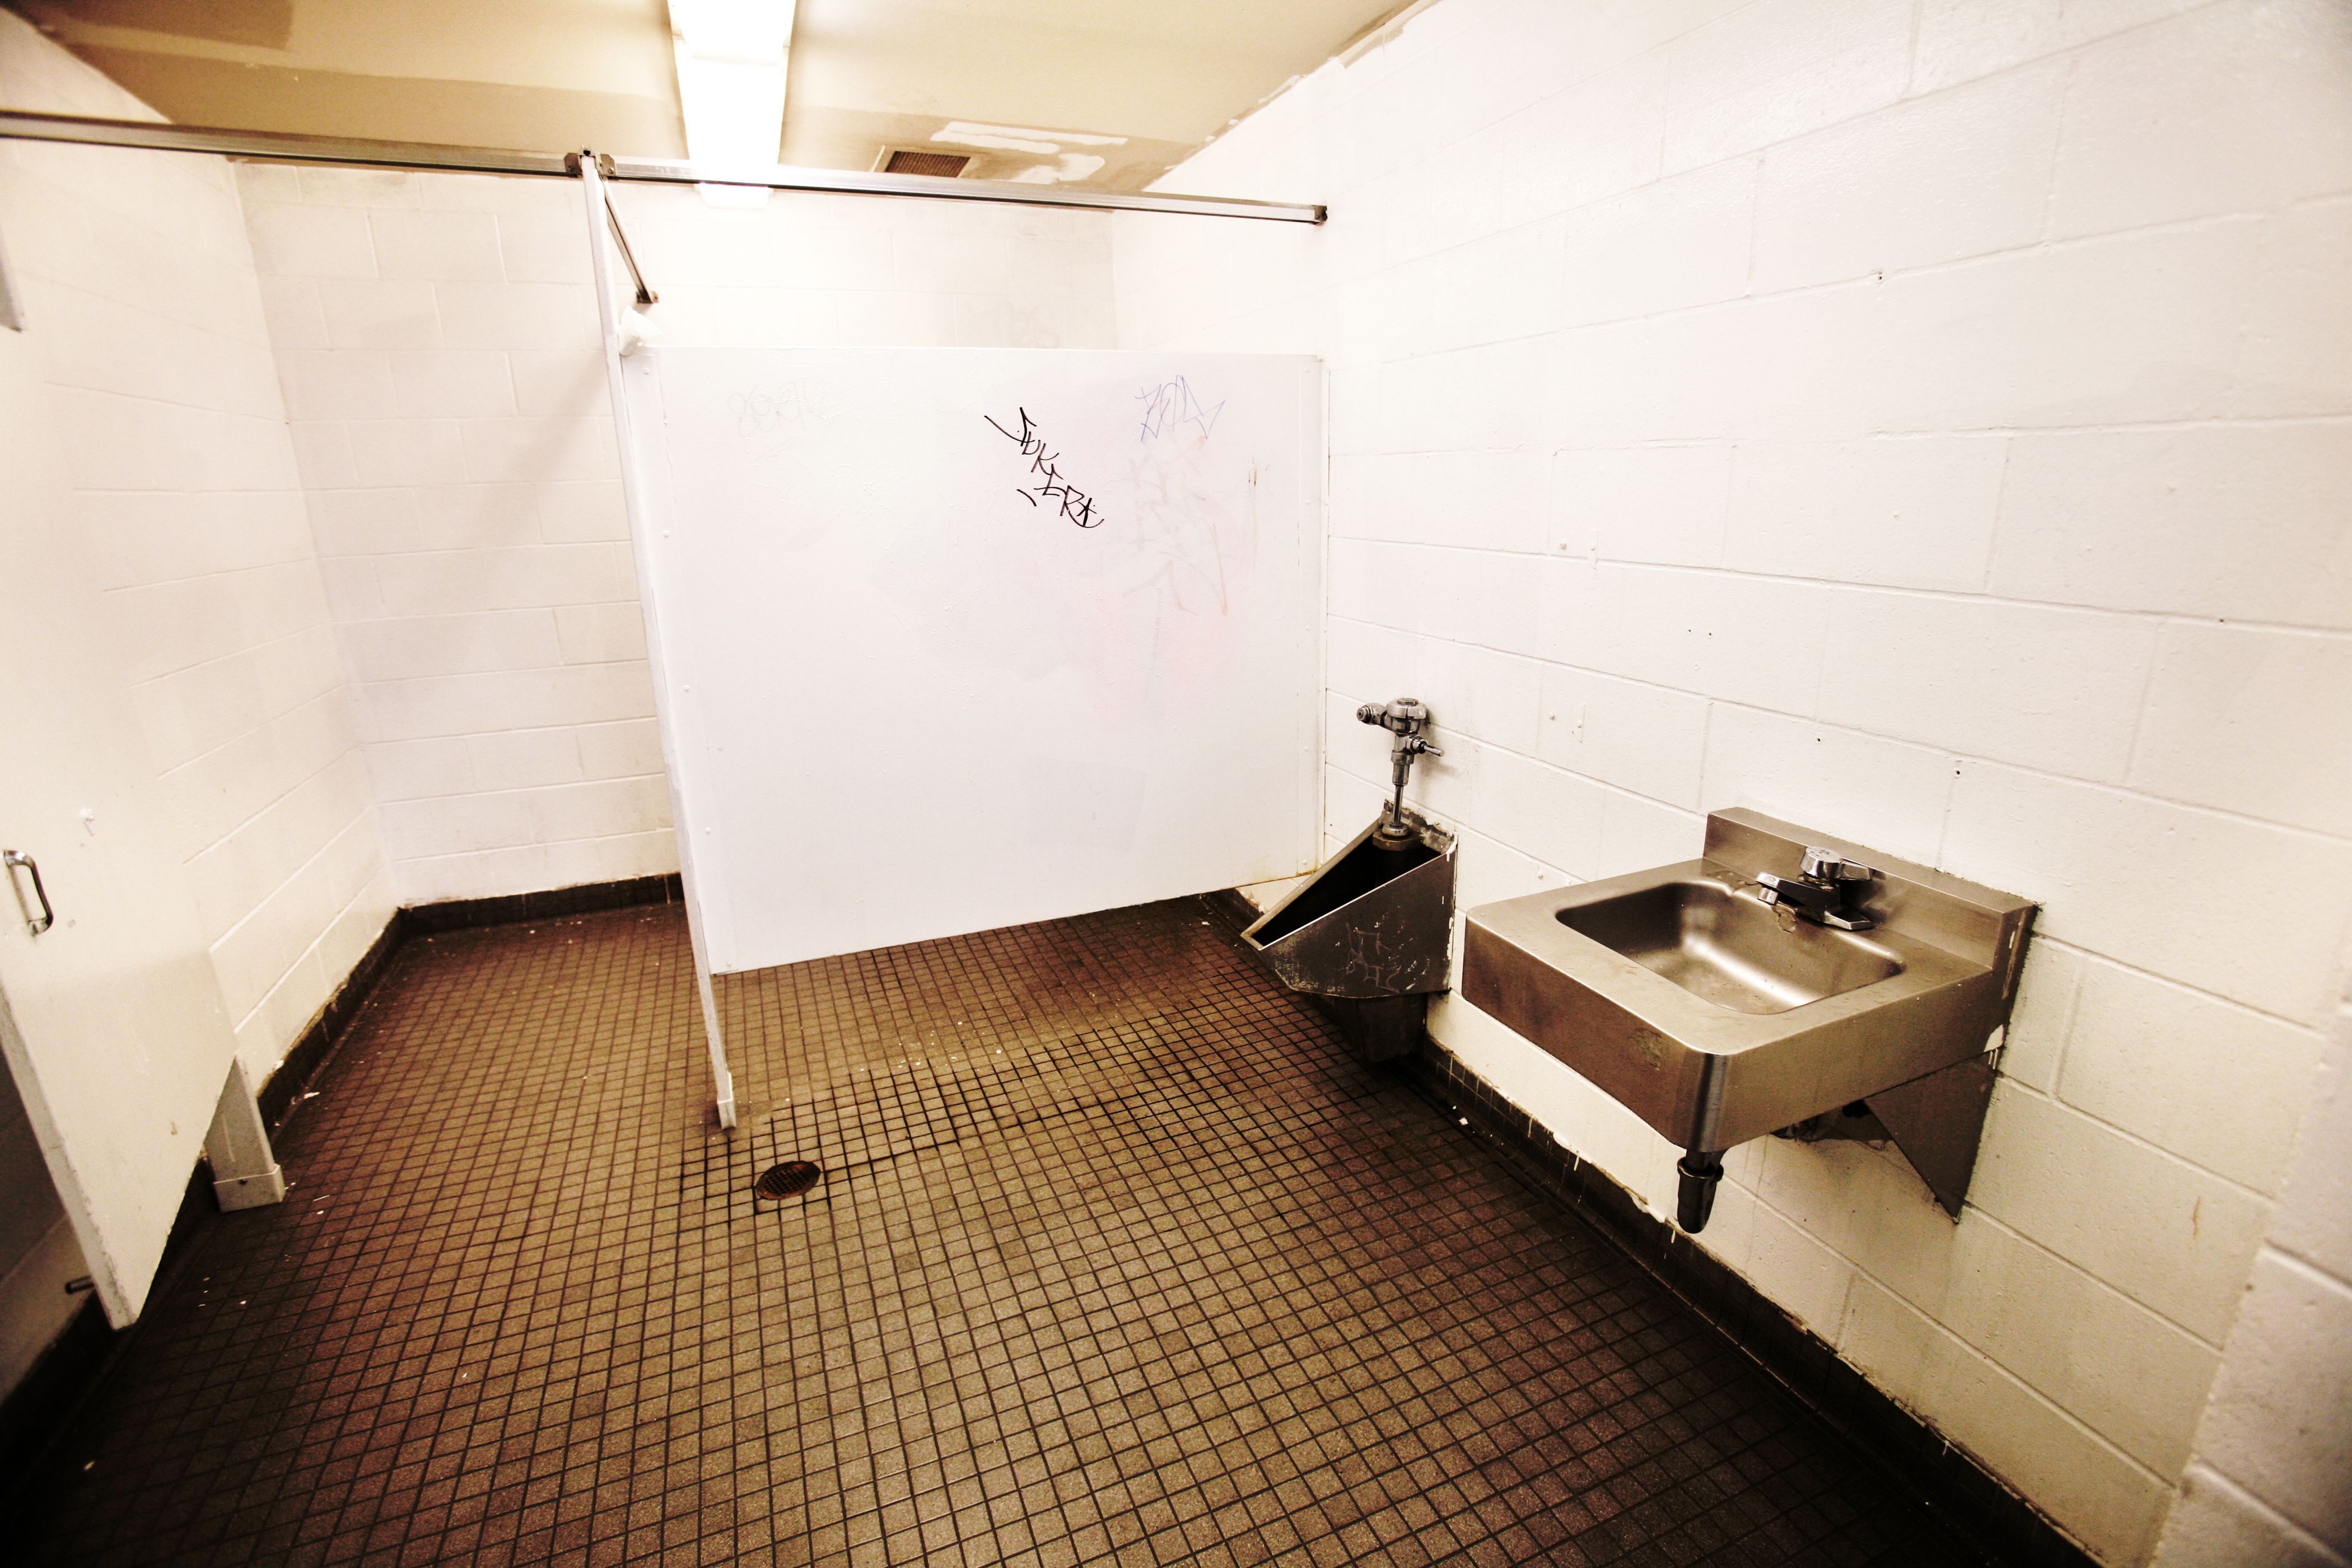 De jeunes chercheurs de BT affirment que les graffitis dans les toilettes ont des effets négatifs « déchirants » sur les étudiants